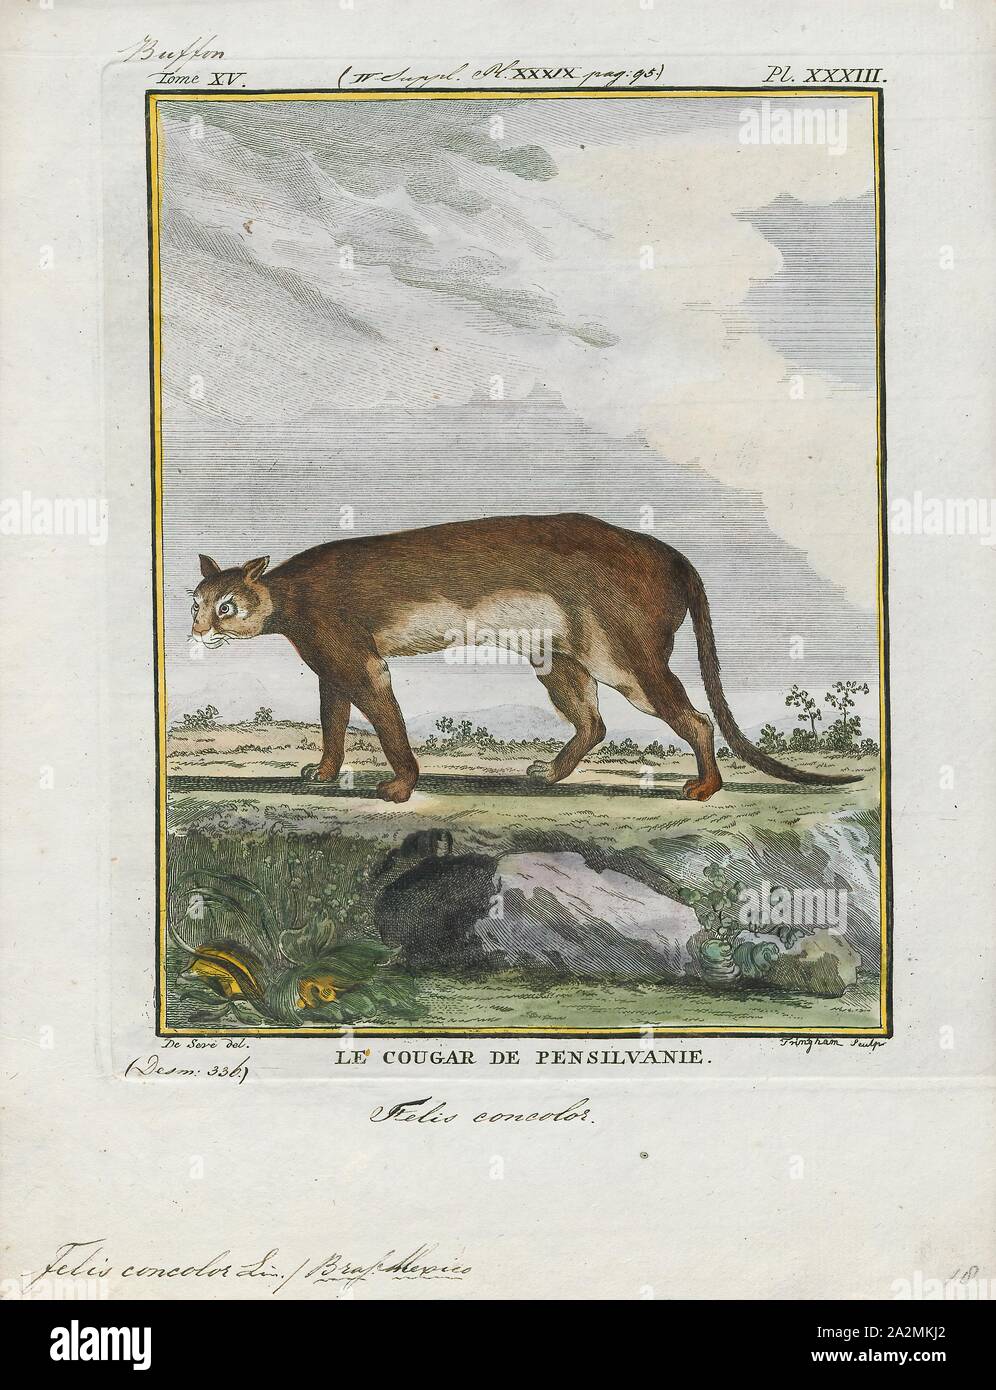 Felis concolor, stampa la cougar (Puma concolor), anche comunemente noto  con altri nomi compresi mountain lion, Panther, puma e catamount, è un  grande felid della sottofamiglia Felinae nativa per le Americhe. La